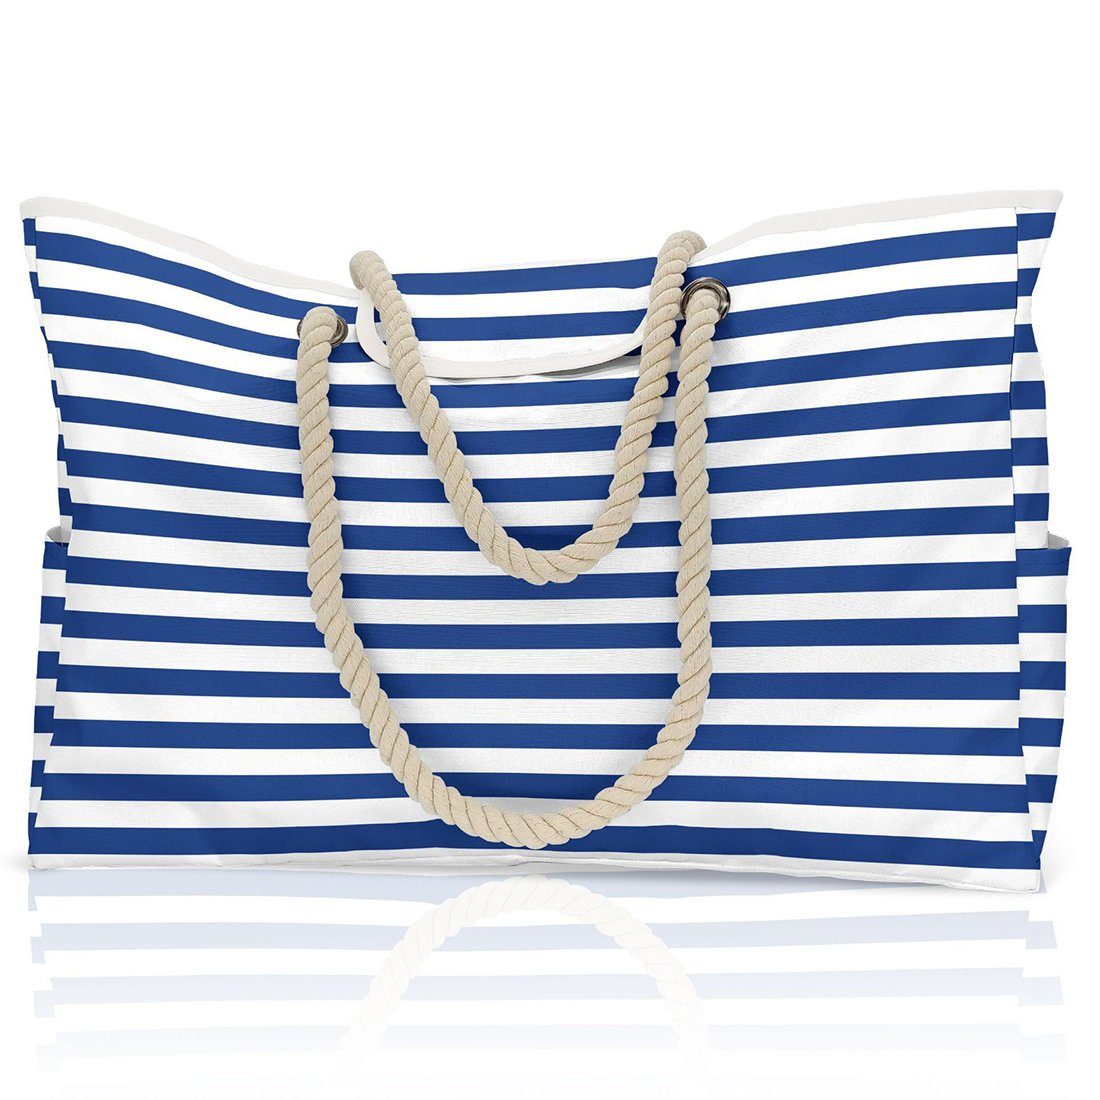 Haiaveng Strandtasche Strandtasche,Wasserdicht Streifen Strandtasche, Badetasche,Grosse Strandtasche blue